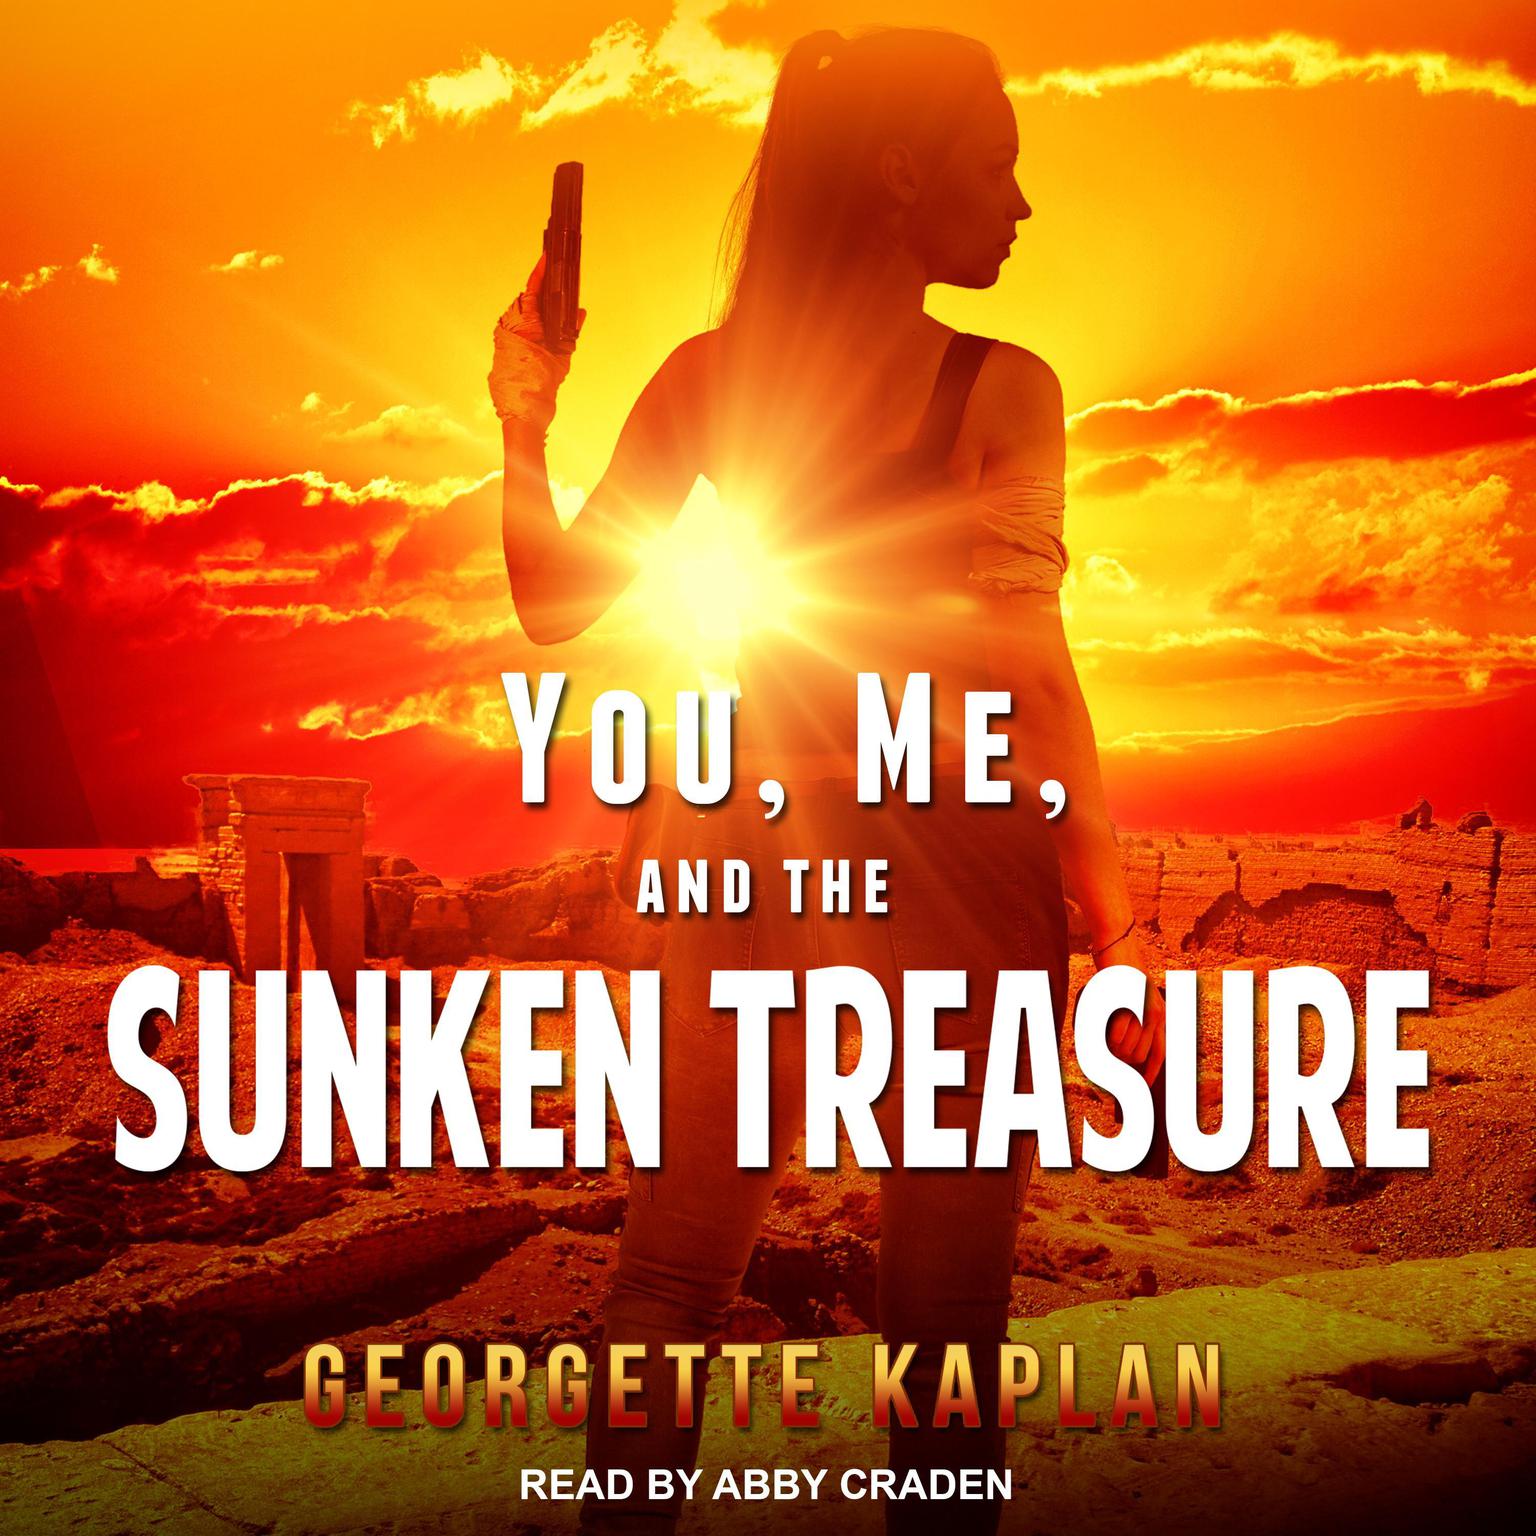 Georgette Kaplan, Abby Craden: You, Me, and the Sunken Treasure (AudiobookFormat, 2021, Ylva)